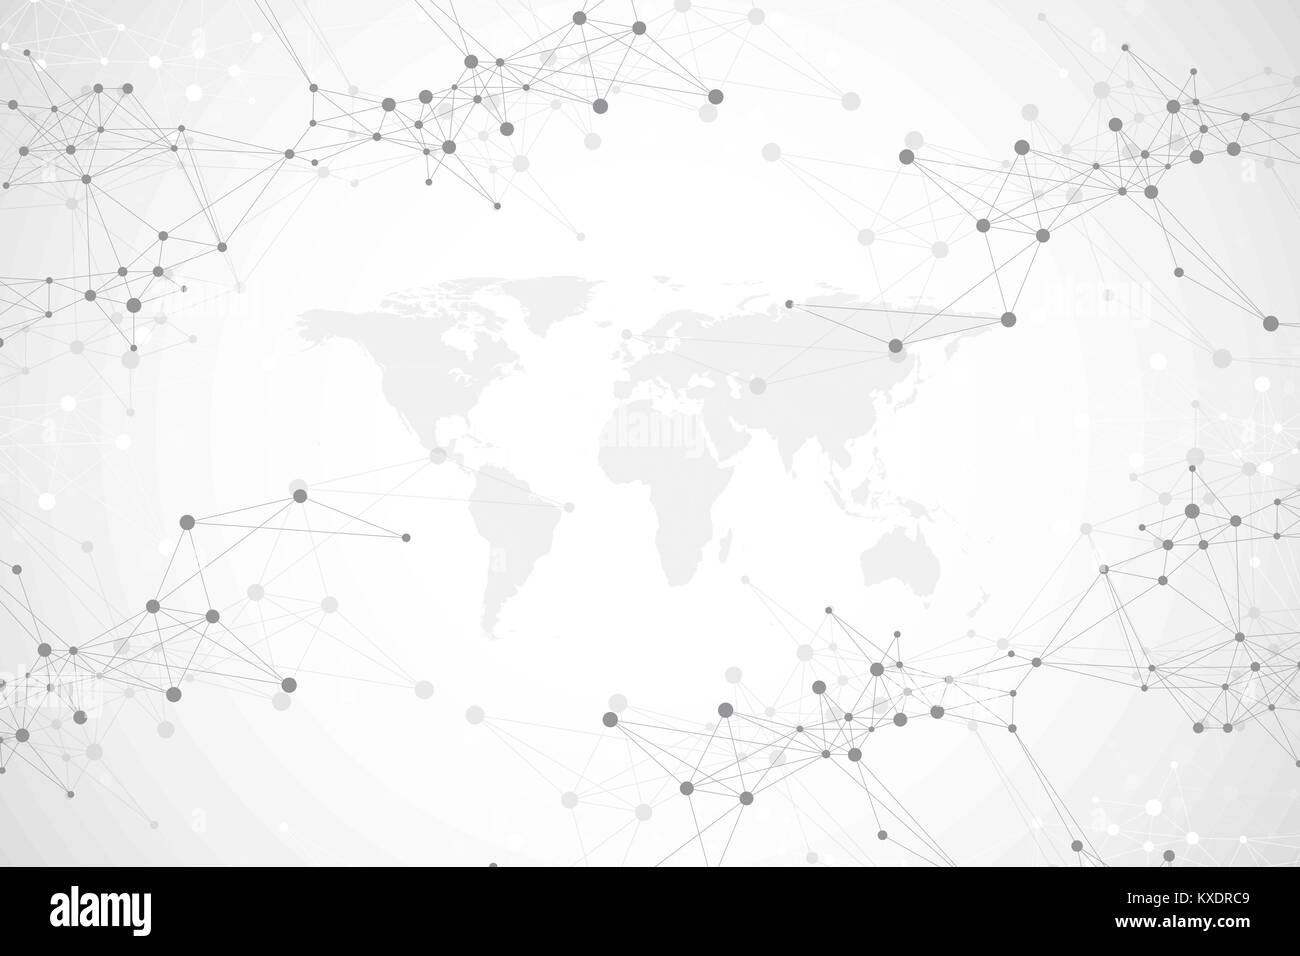 Politische Weltkarte mit Global Technology networking Konzept. Digitale Daten Visualisierung. Linien Plexus. Grosse Daten Hintergrund Kommunikation. Wissenschaftliche Vector Illustration Stock Vektor